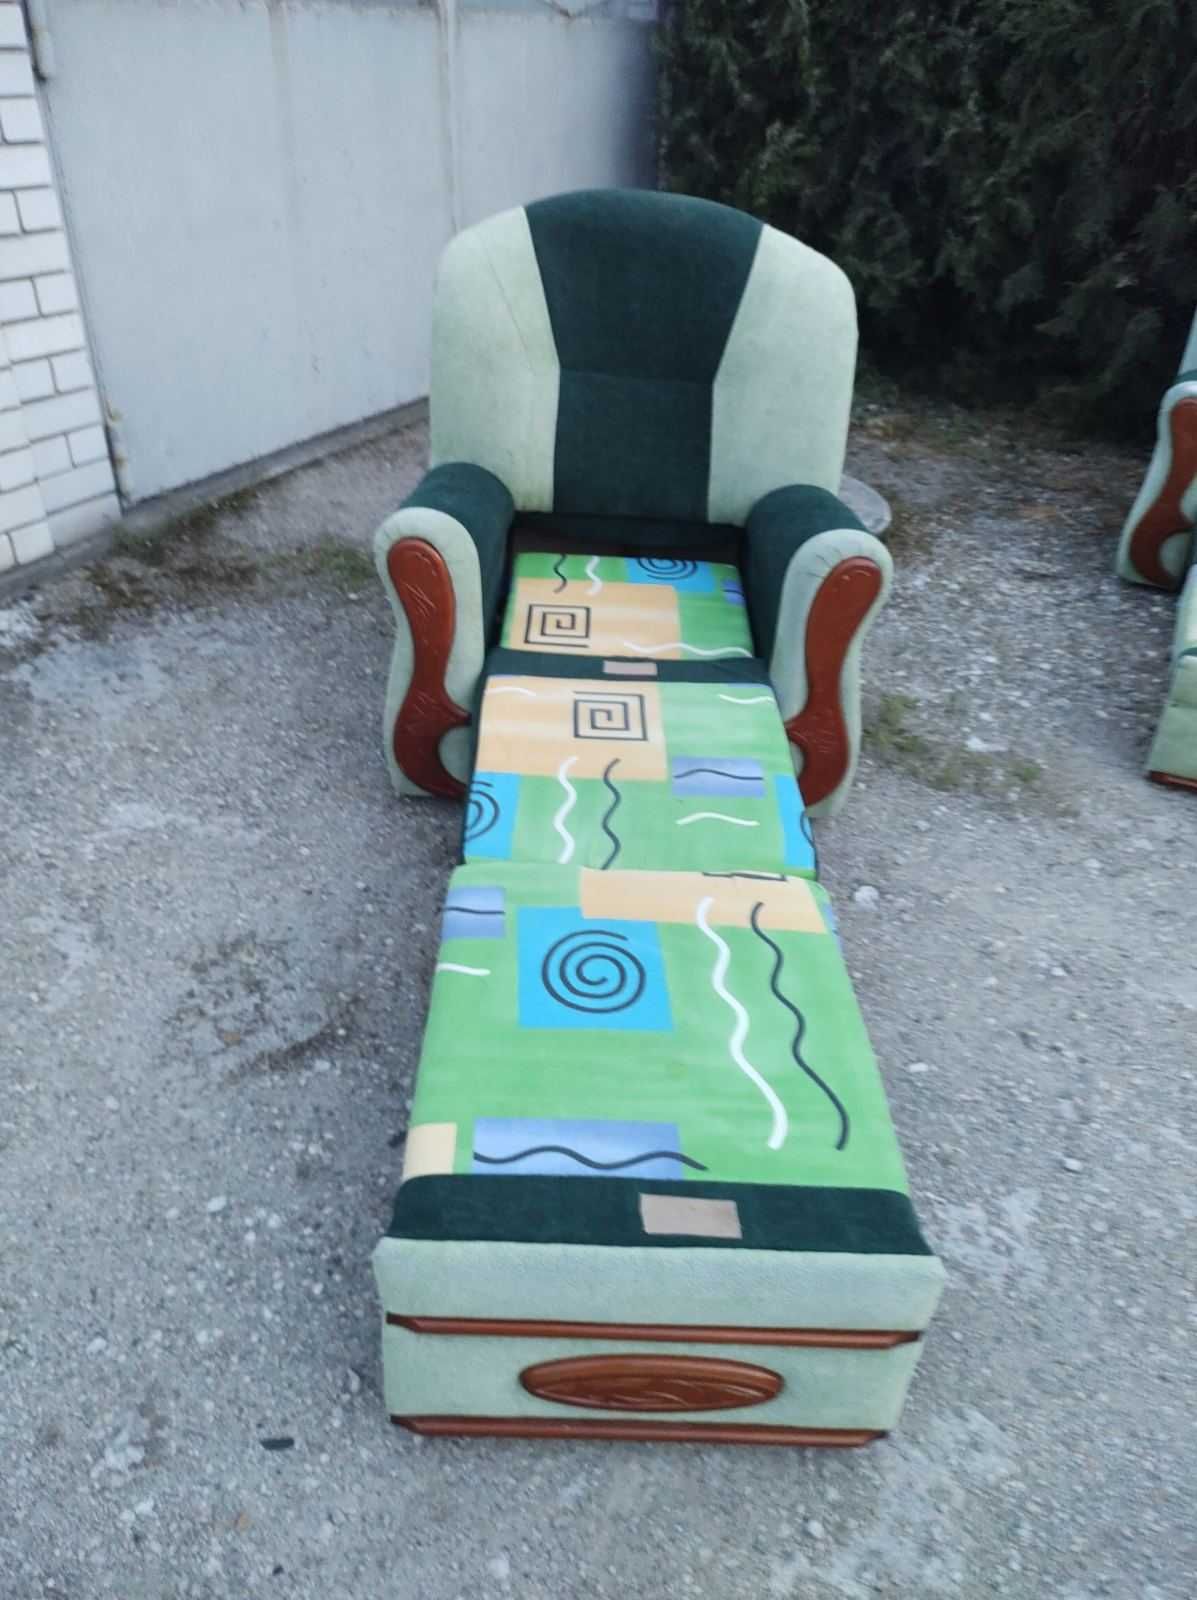 добротное солидное объёмное комфортное кресло-кровать 2шт.отлич.сост.